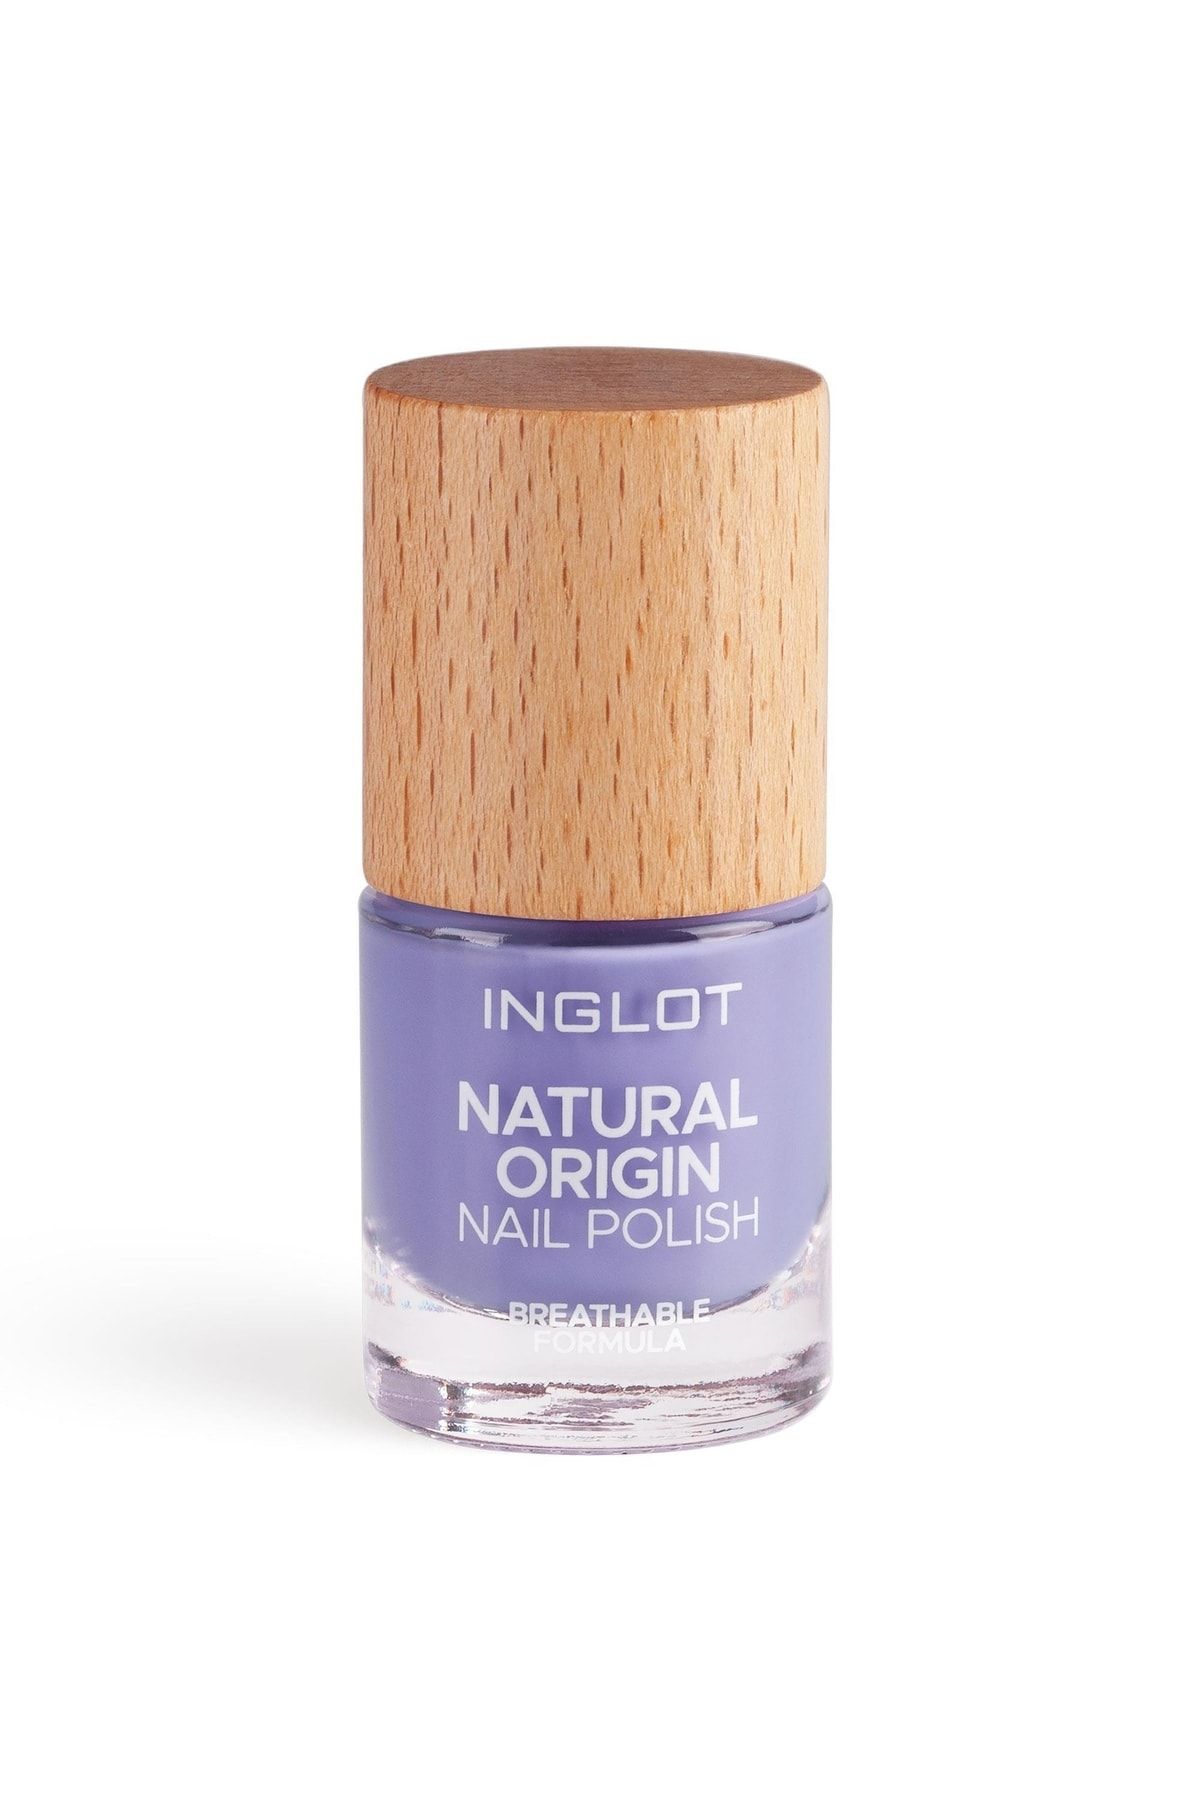 Inglot Natural Origin Nail Polish